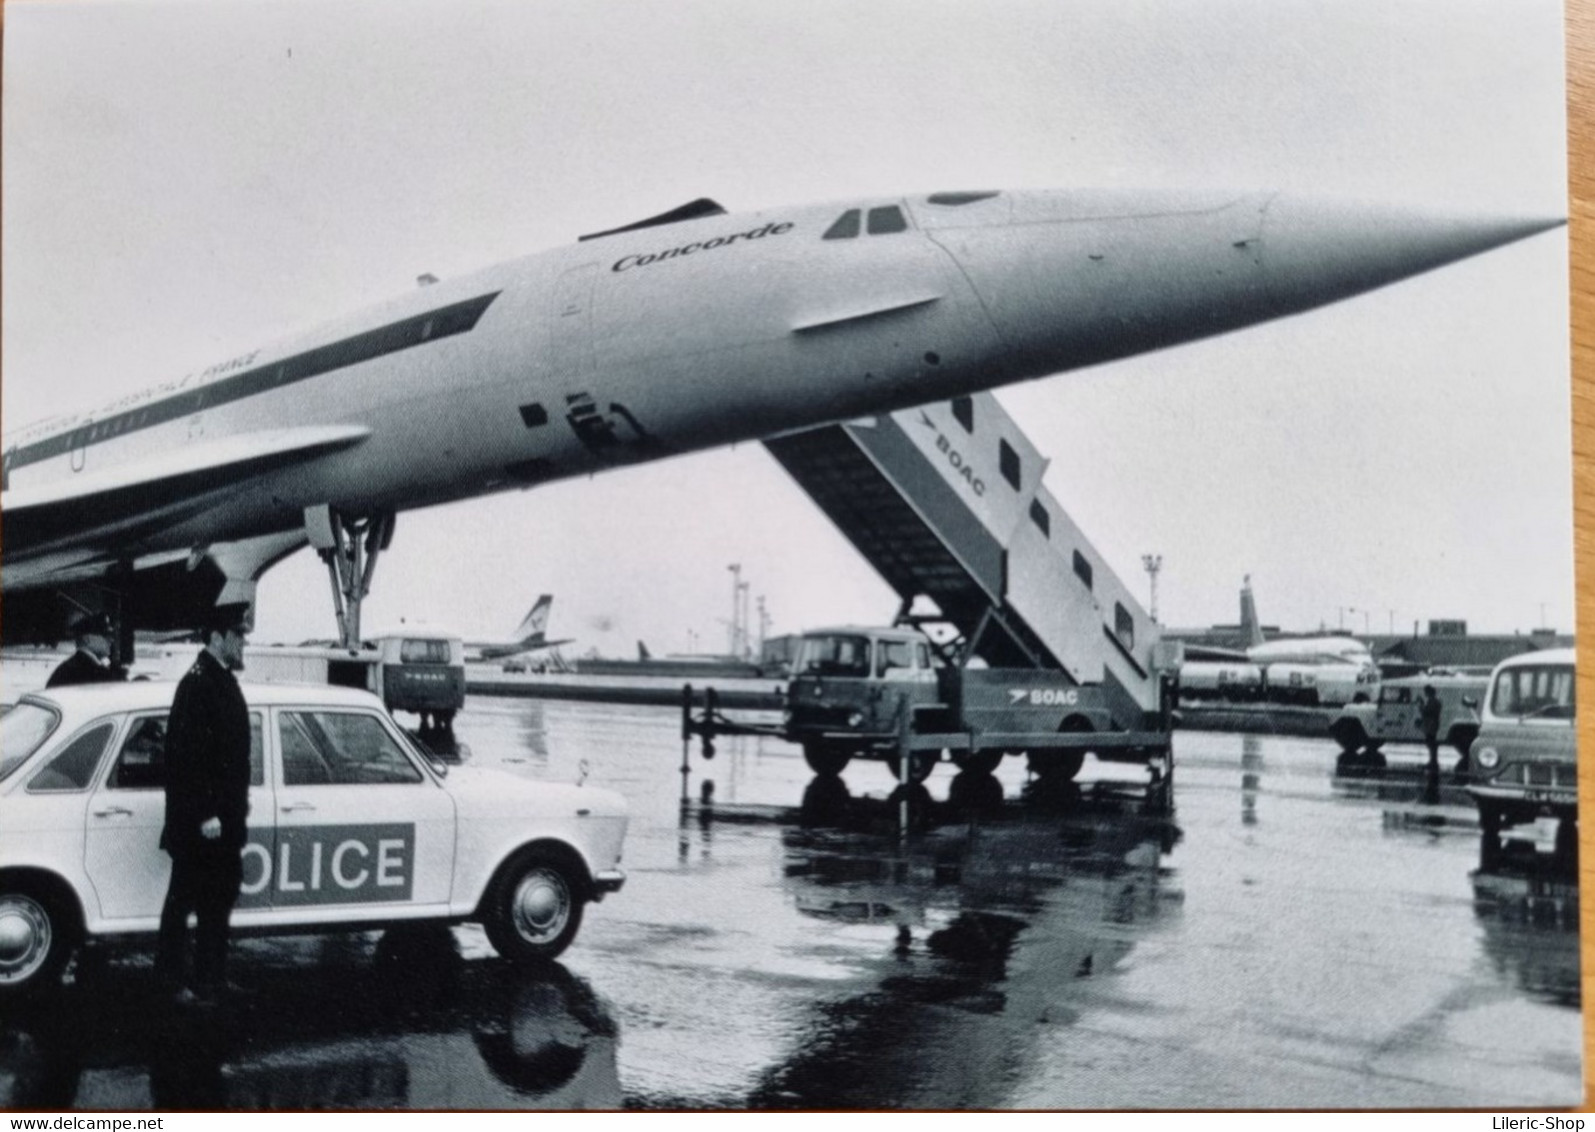 EXCLUSIVITÉ Coffret COLLECTOR 1976/2003 CONCORDE BRITISH AIRWAYS - 6 CARTES POSTALES DOUBLES ET ENVELOPPES - 1946-....: Modern Era